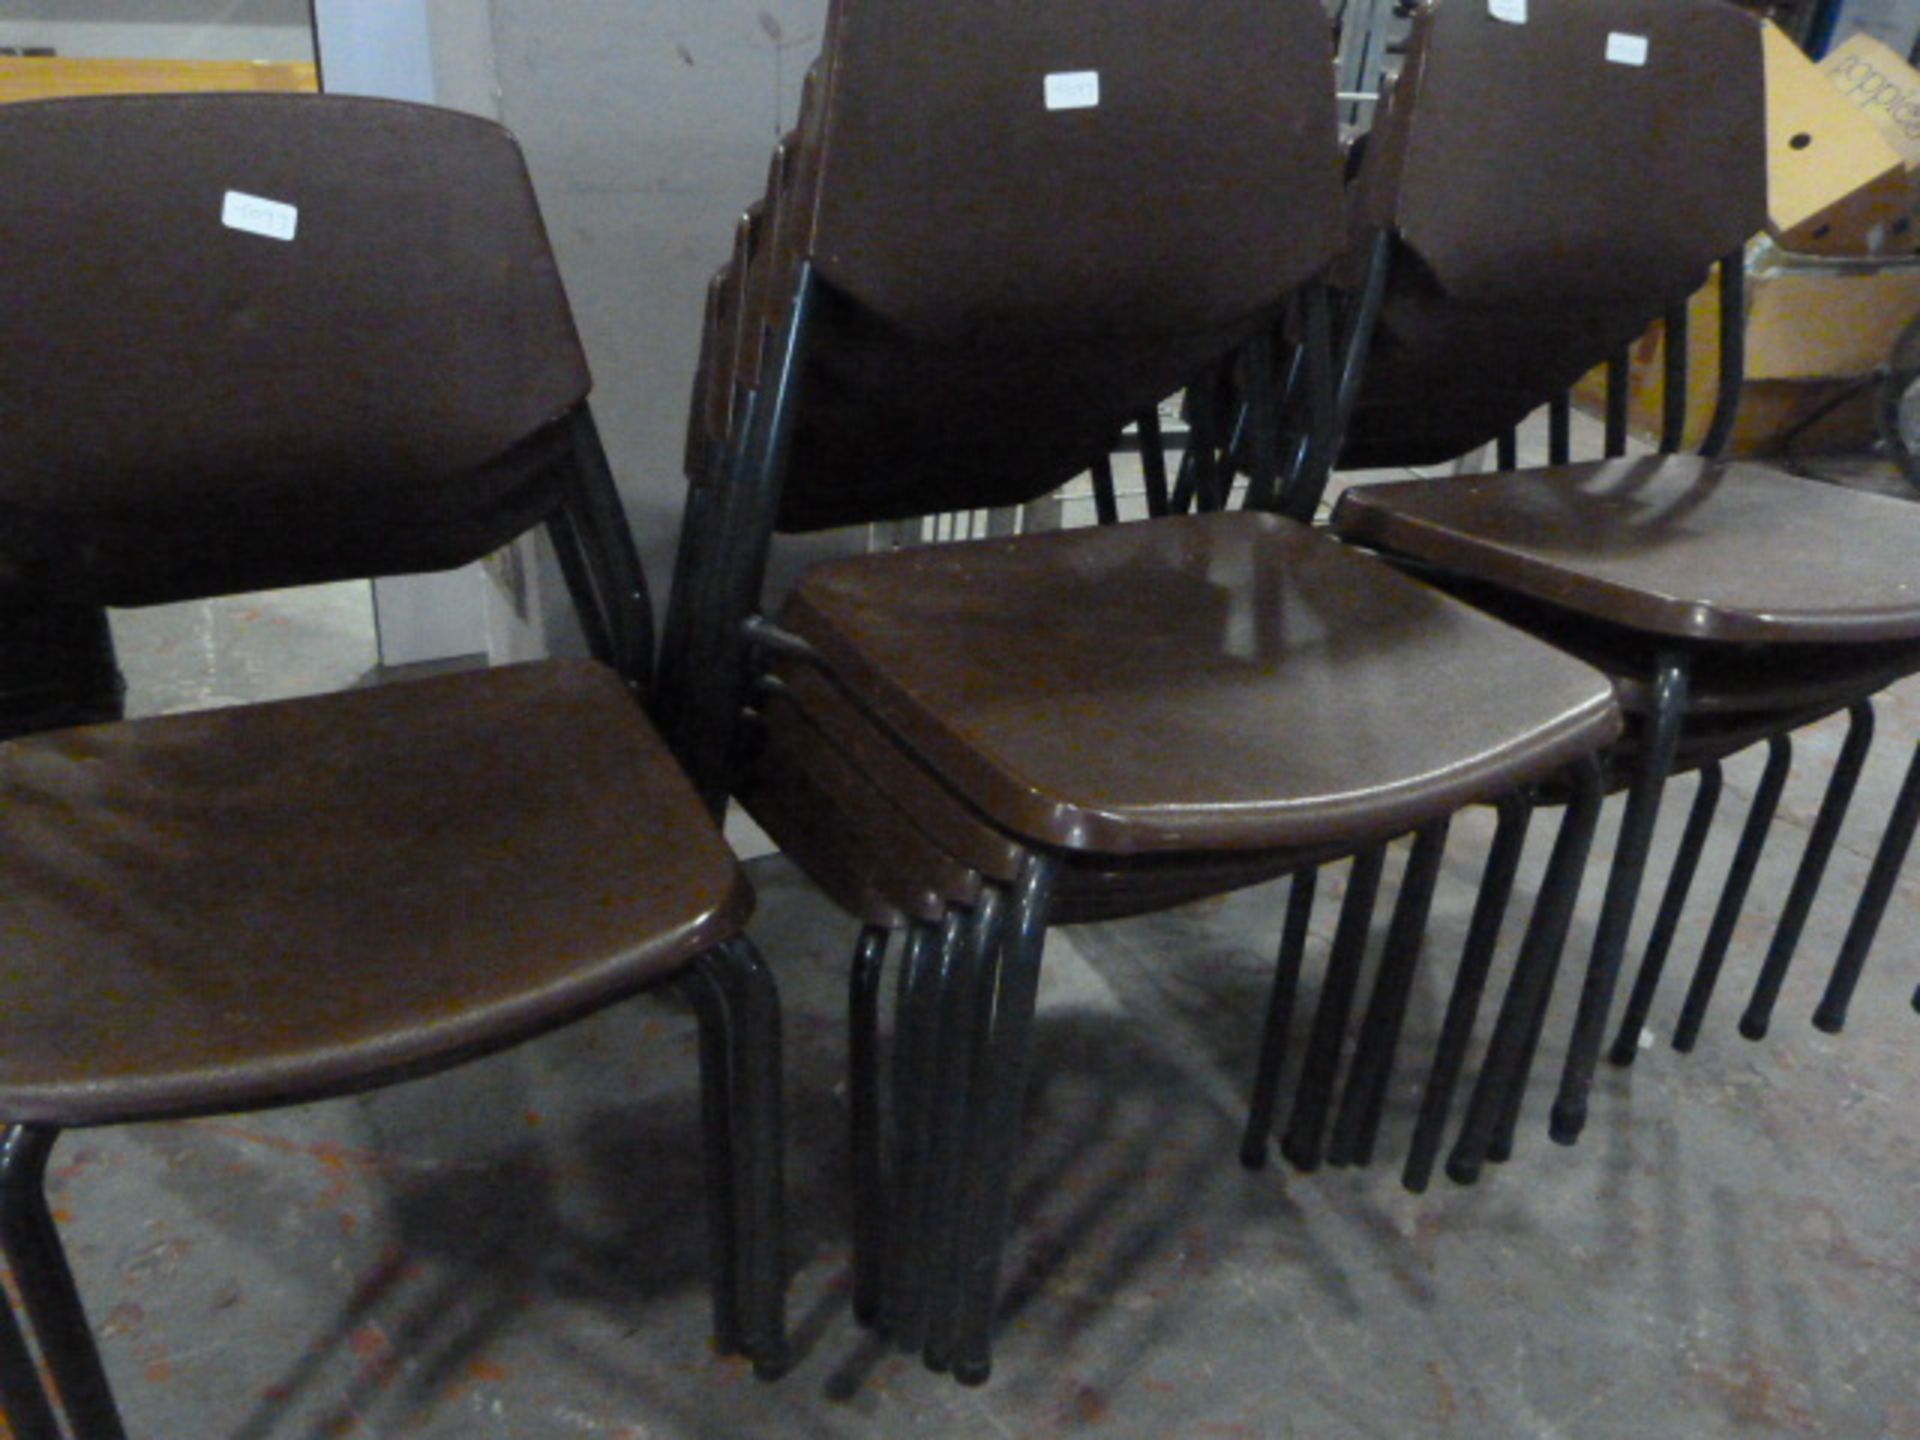 Thirteen Brown Polypropylene Chairs